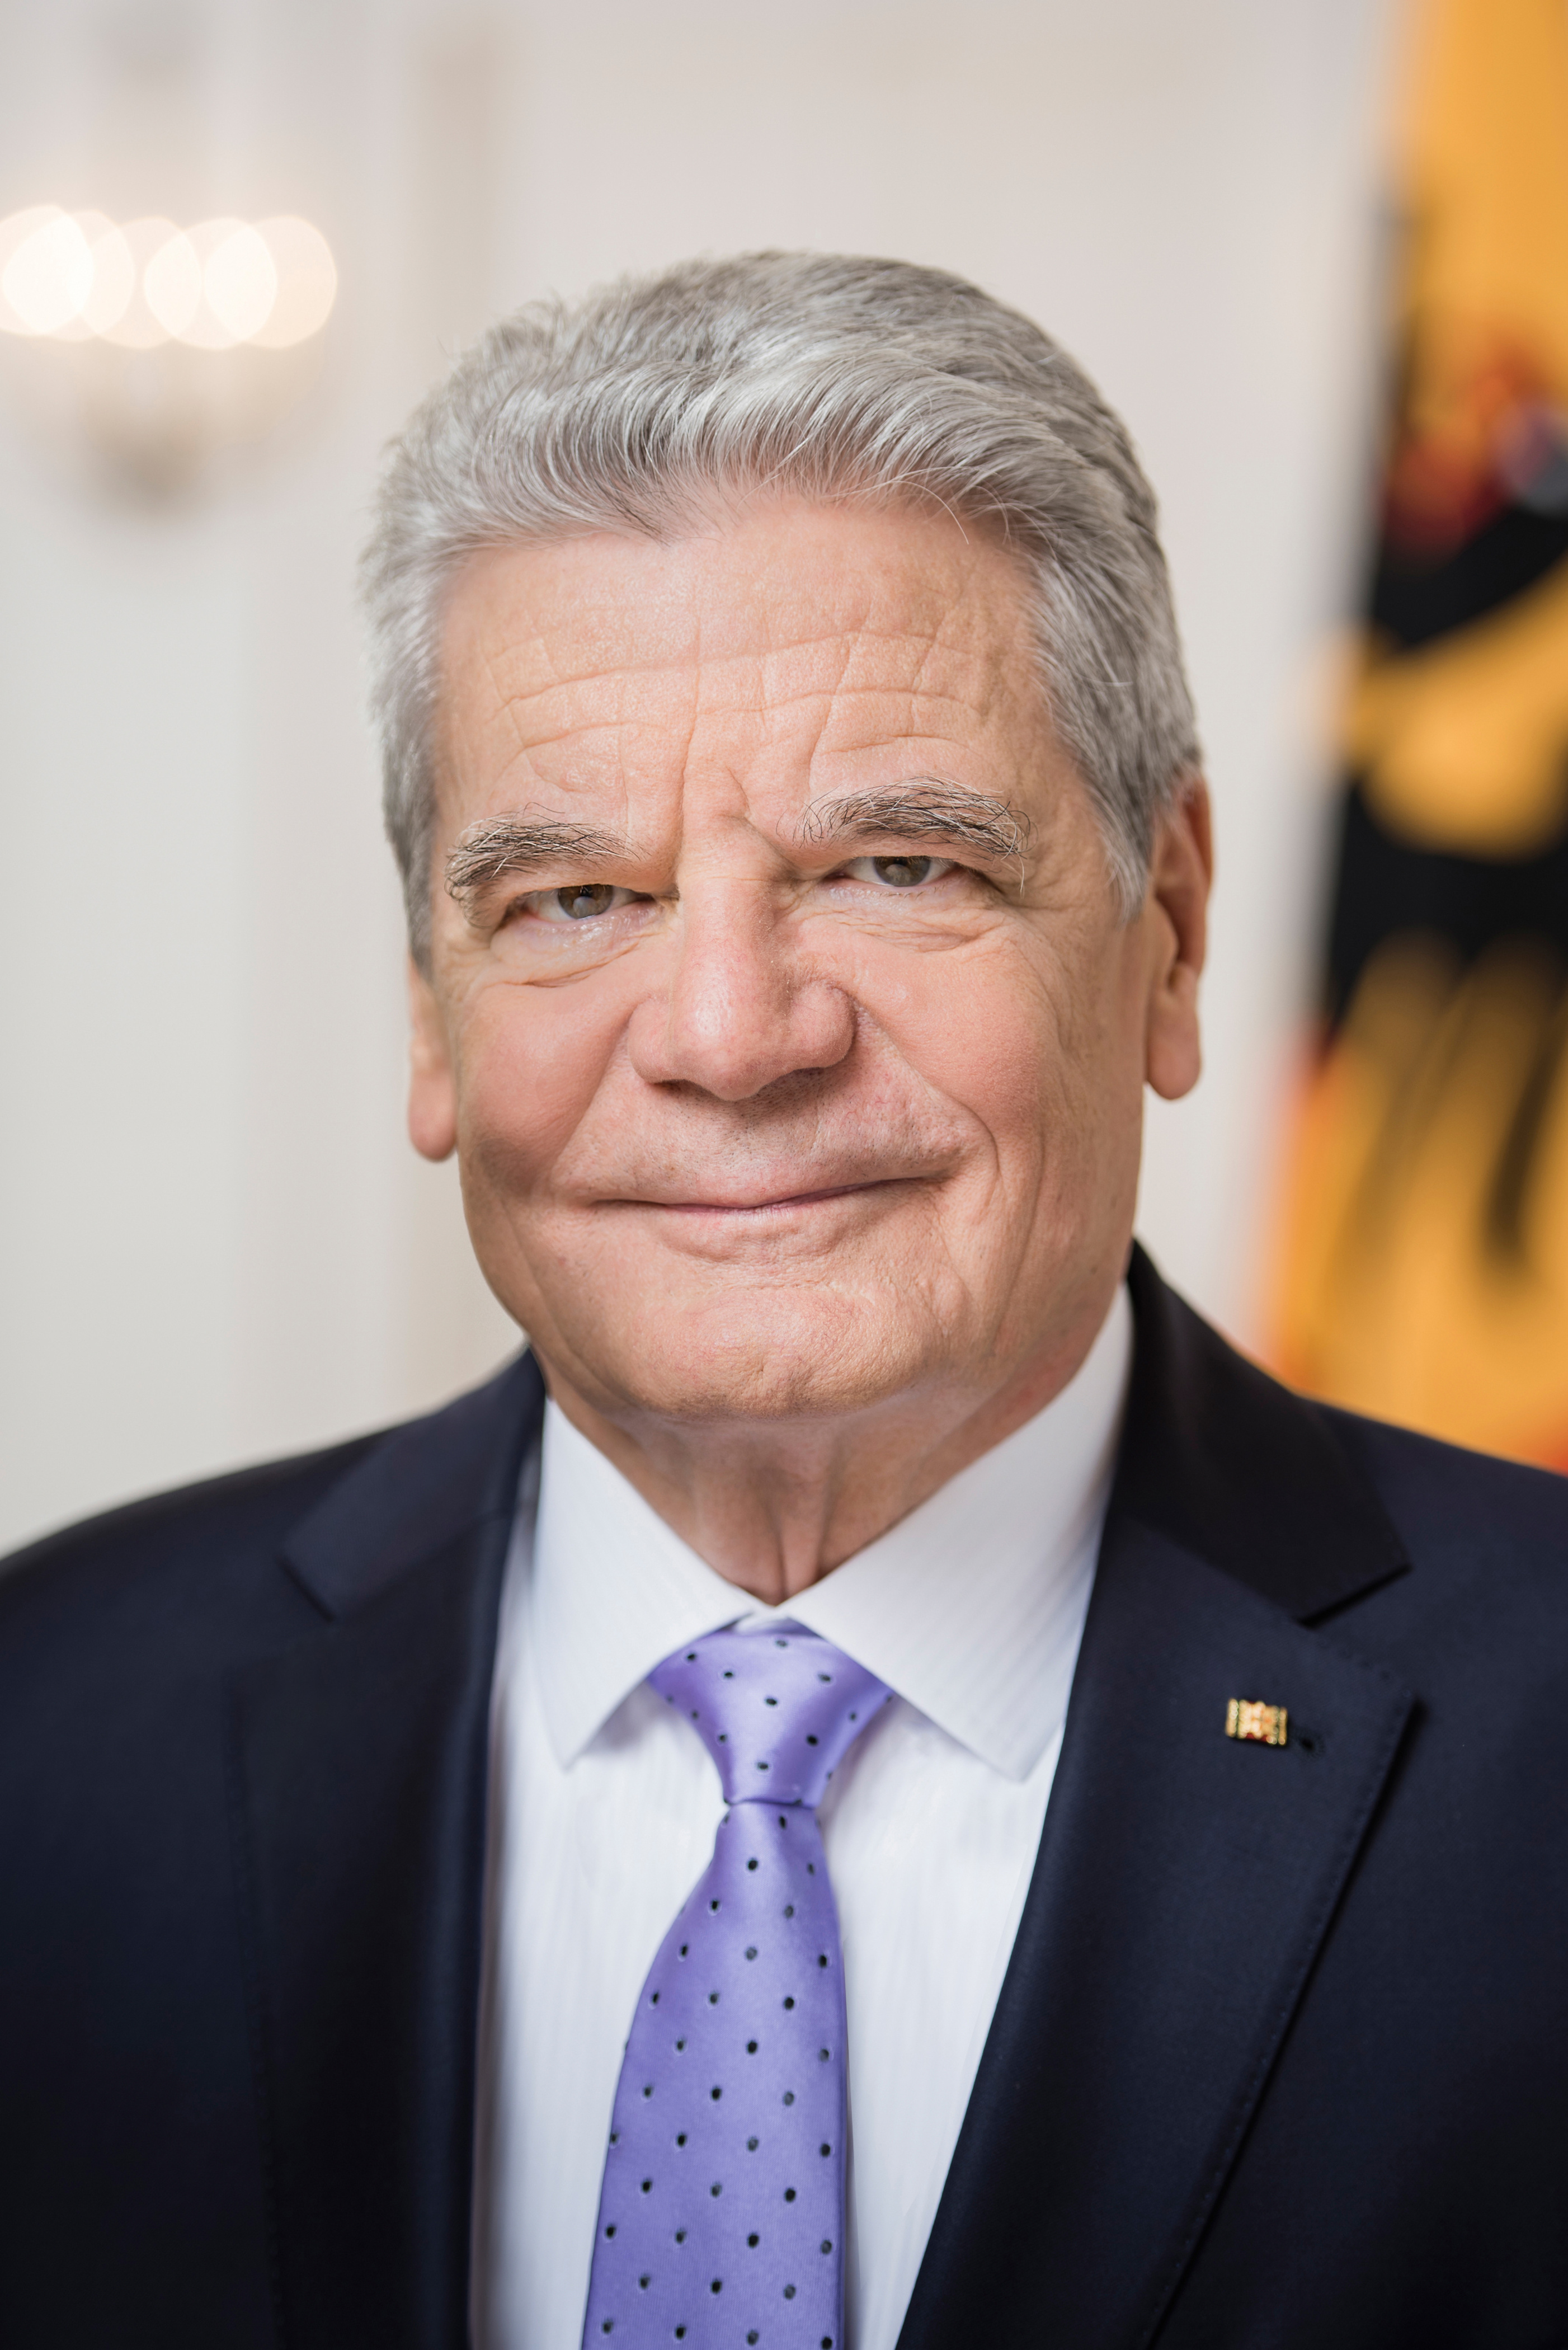 Grußwort des Bundespräsidenten Gauck zum Newroz-Fest 2016